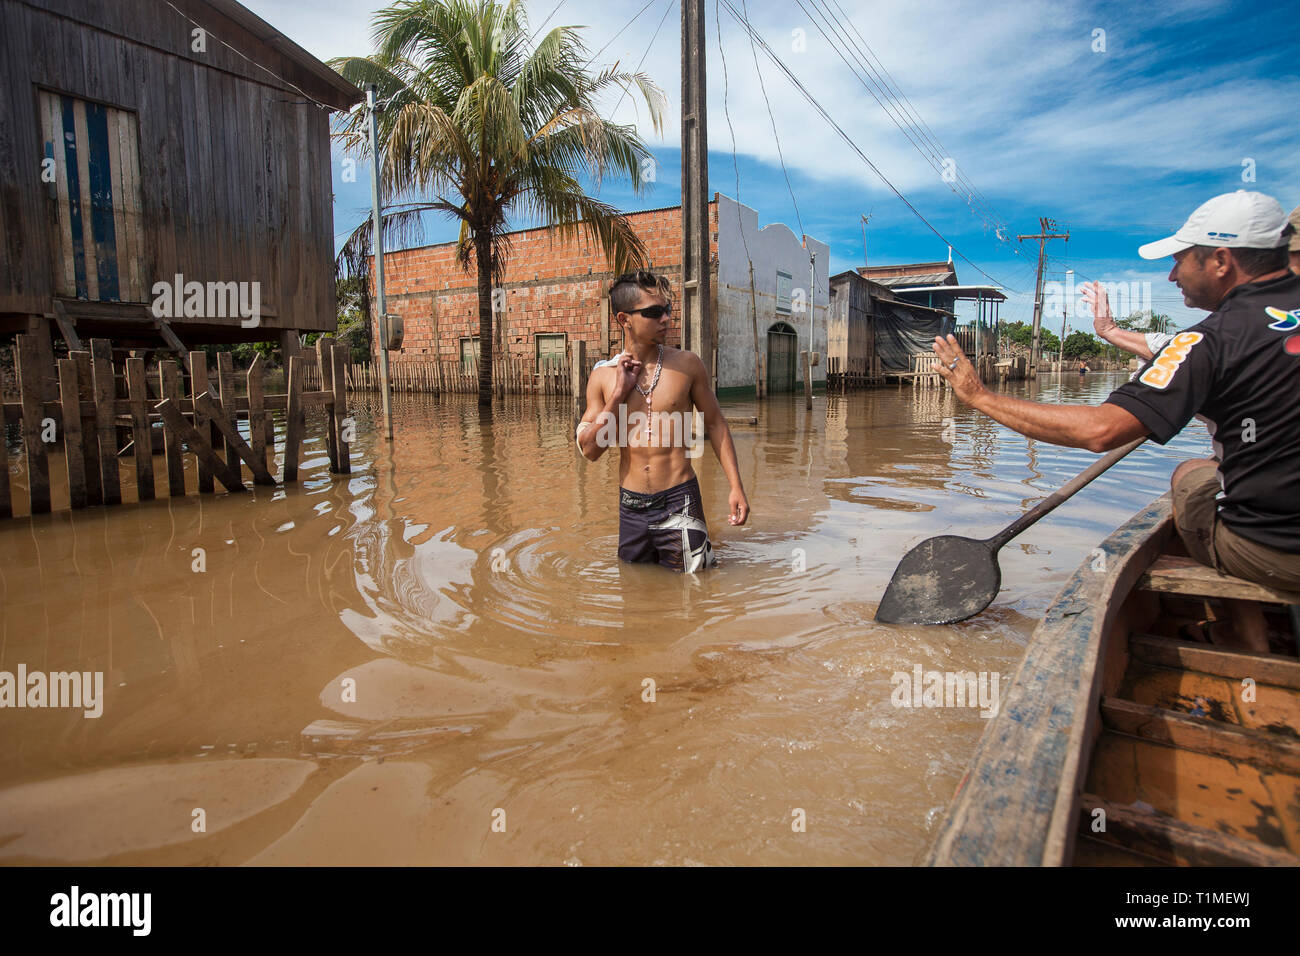 2015 Inondazioni in Amazzonia brasiliana, Taquari distretto, Rio Branco città, Acre. Le inondazioni sono state che colpisce migliaia di persone in stato di Acre, nel nord del Brasile, dal 23 febbraio 2015, quando alcuni dei suoi fiumi, in particolare il fiume acri, in overflow. Ulteriori pioggia pesante ha costretto i livelli del fiume ancora maggiore, e il 03 marzo 2015 Brasile del governo federale ha dichiarato lo stato di emergenza in stato di acri, dove alluvioni corrente situazione è stata descritta come la peggiore in 132 anni. Foto Stock